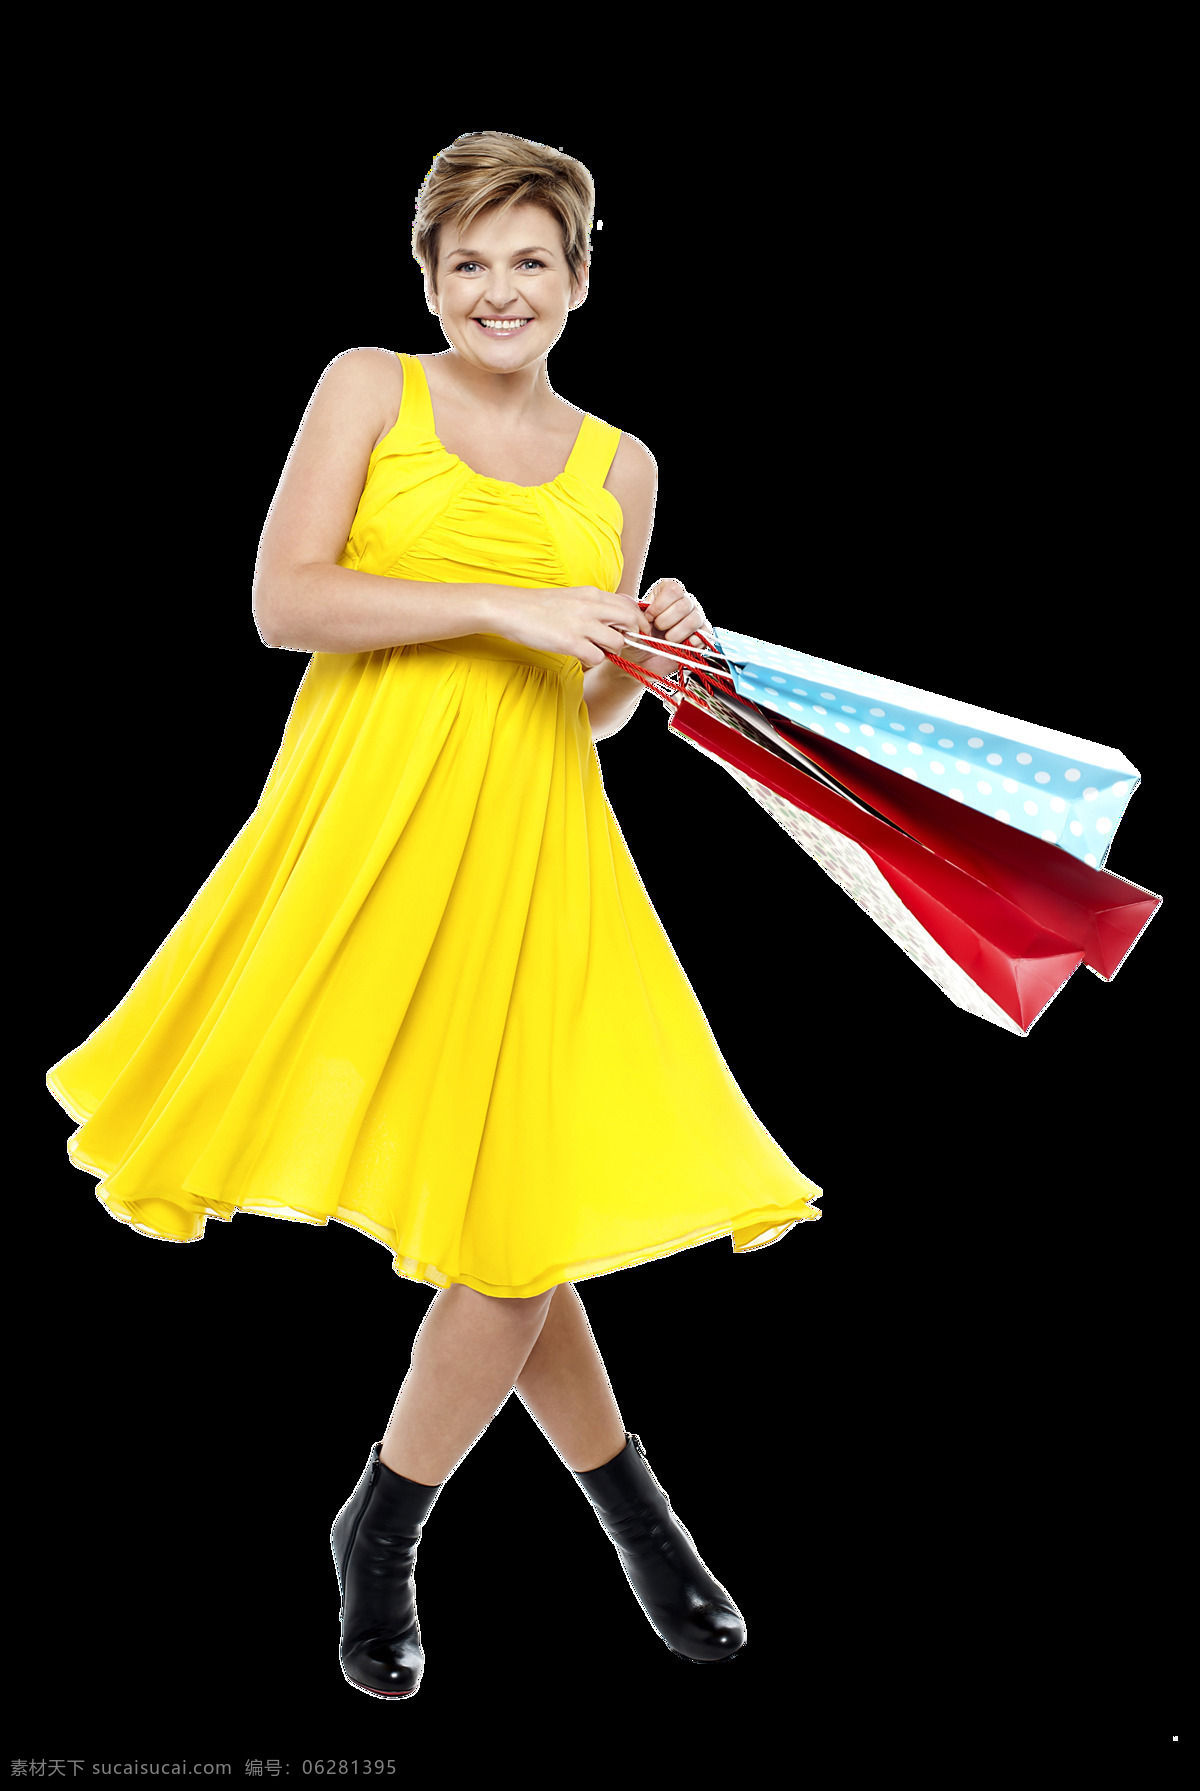 购物 时尚 美女图片 购物袋 黄色连衣裙 美女 外国人物 生活人物 人物图片